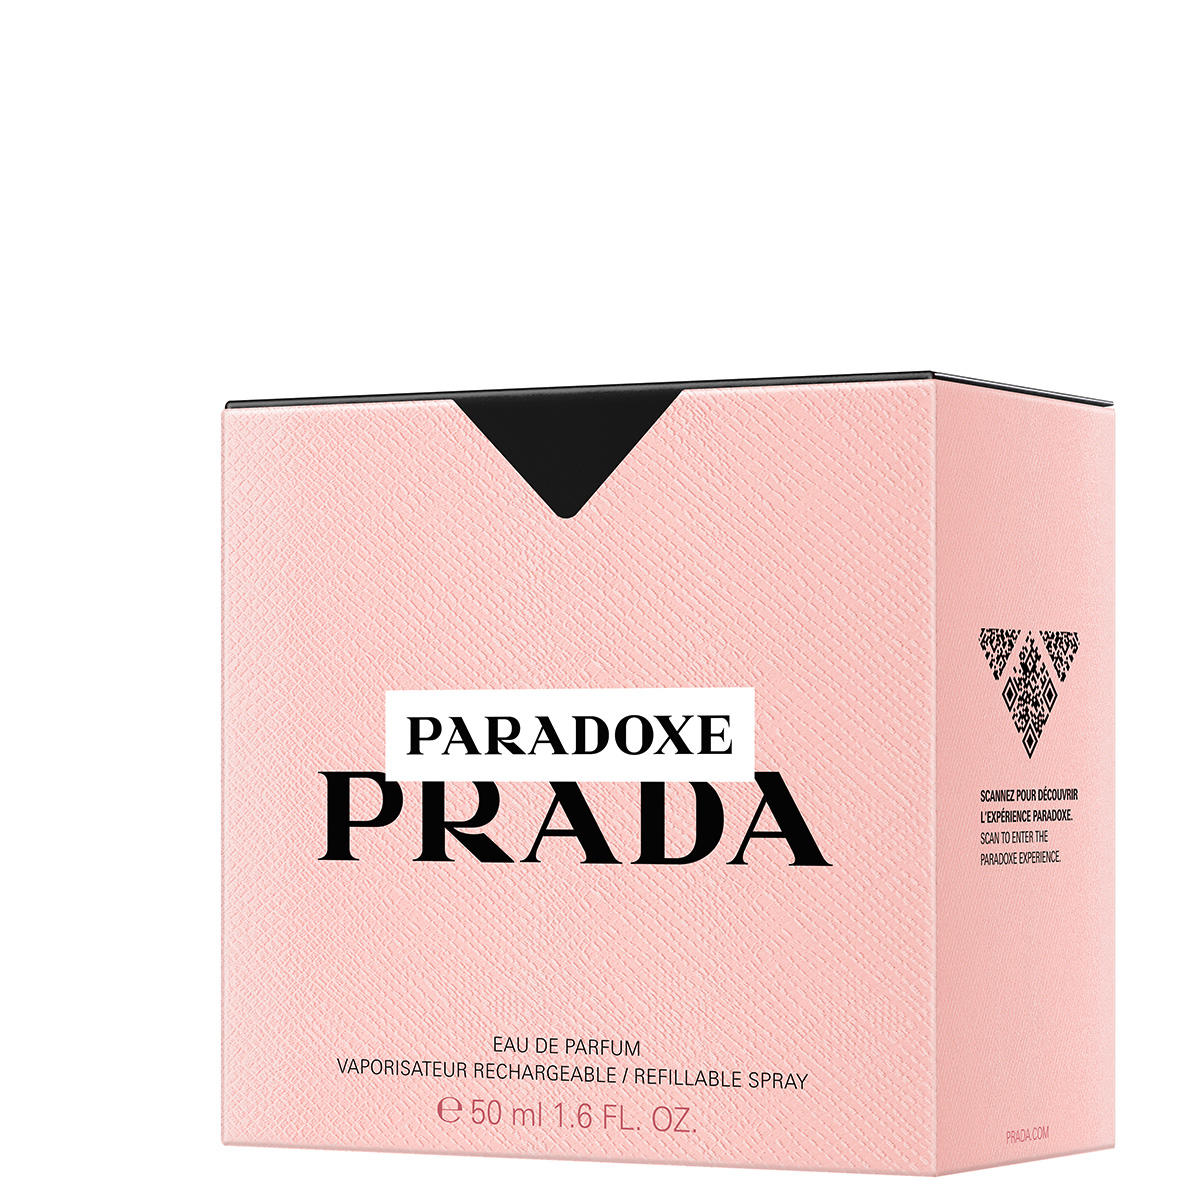 Prada Paradoxe Eau de Parfum 50 ml - 2